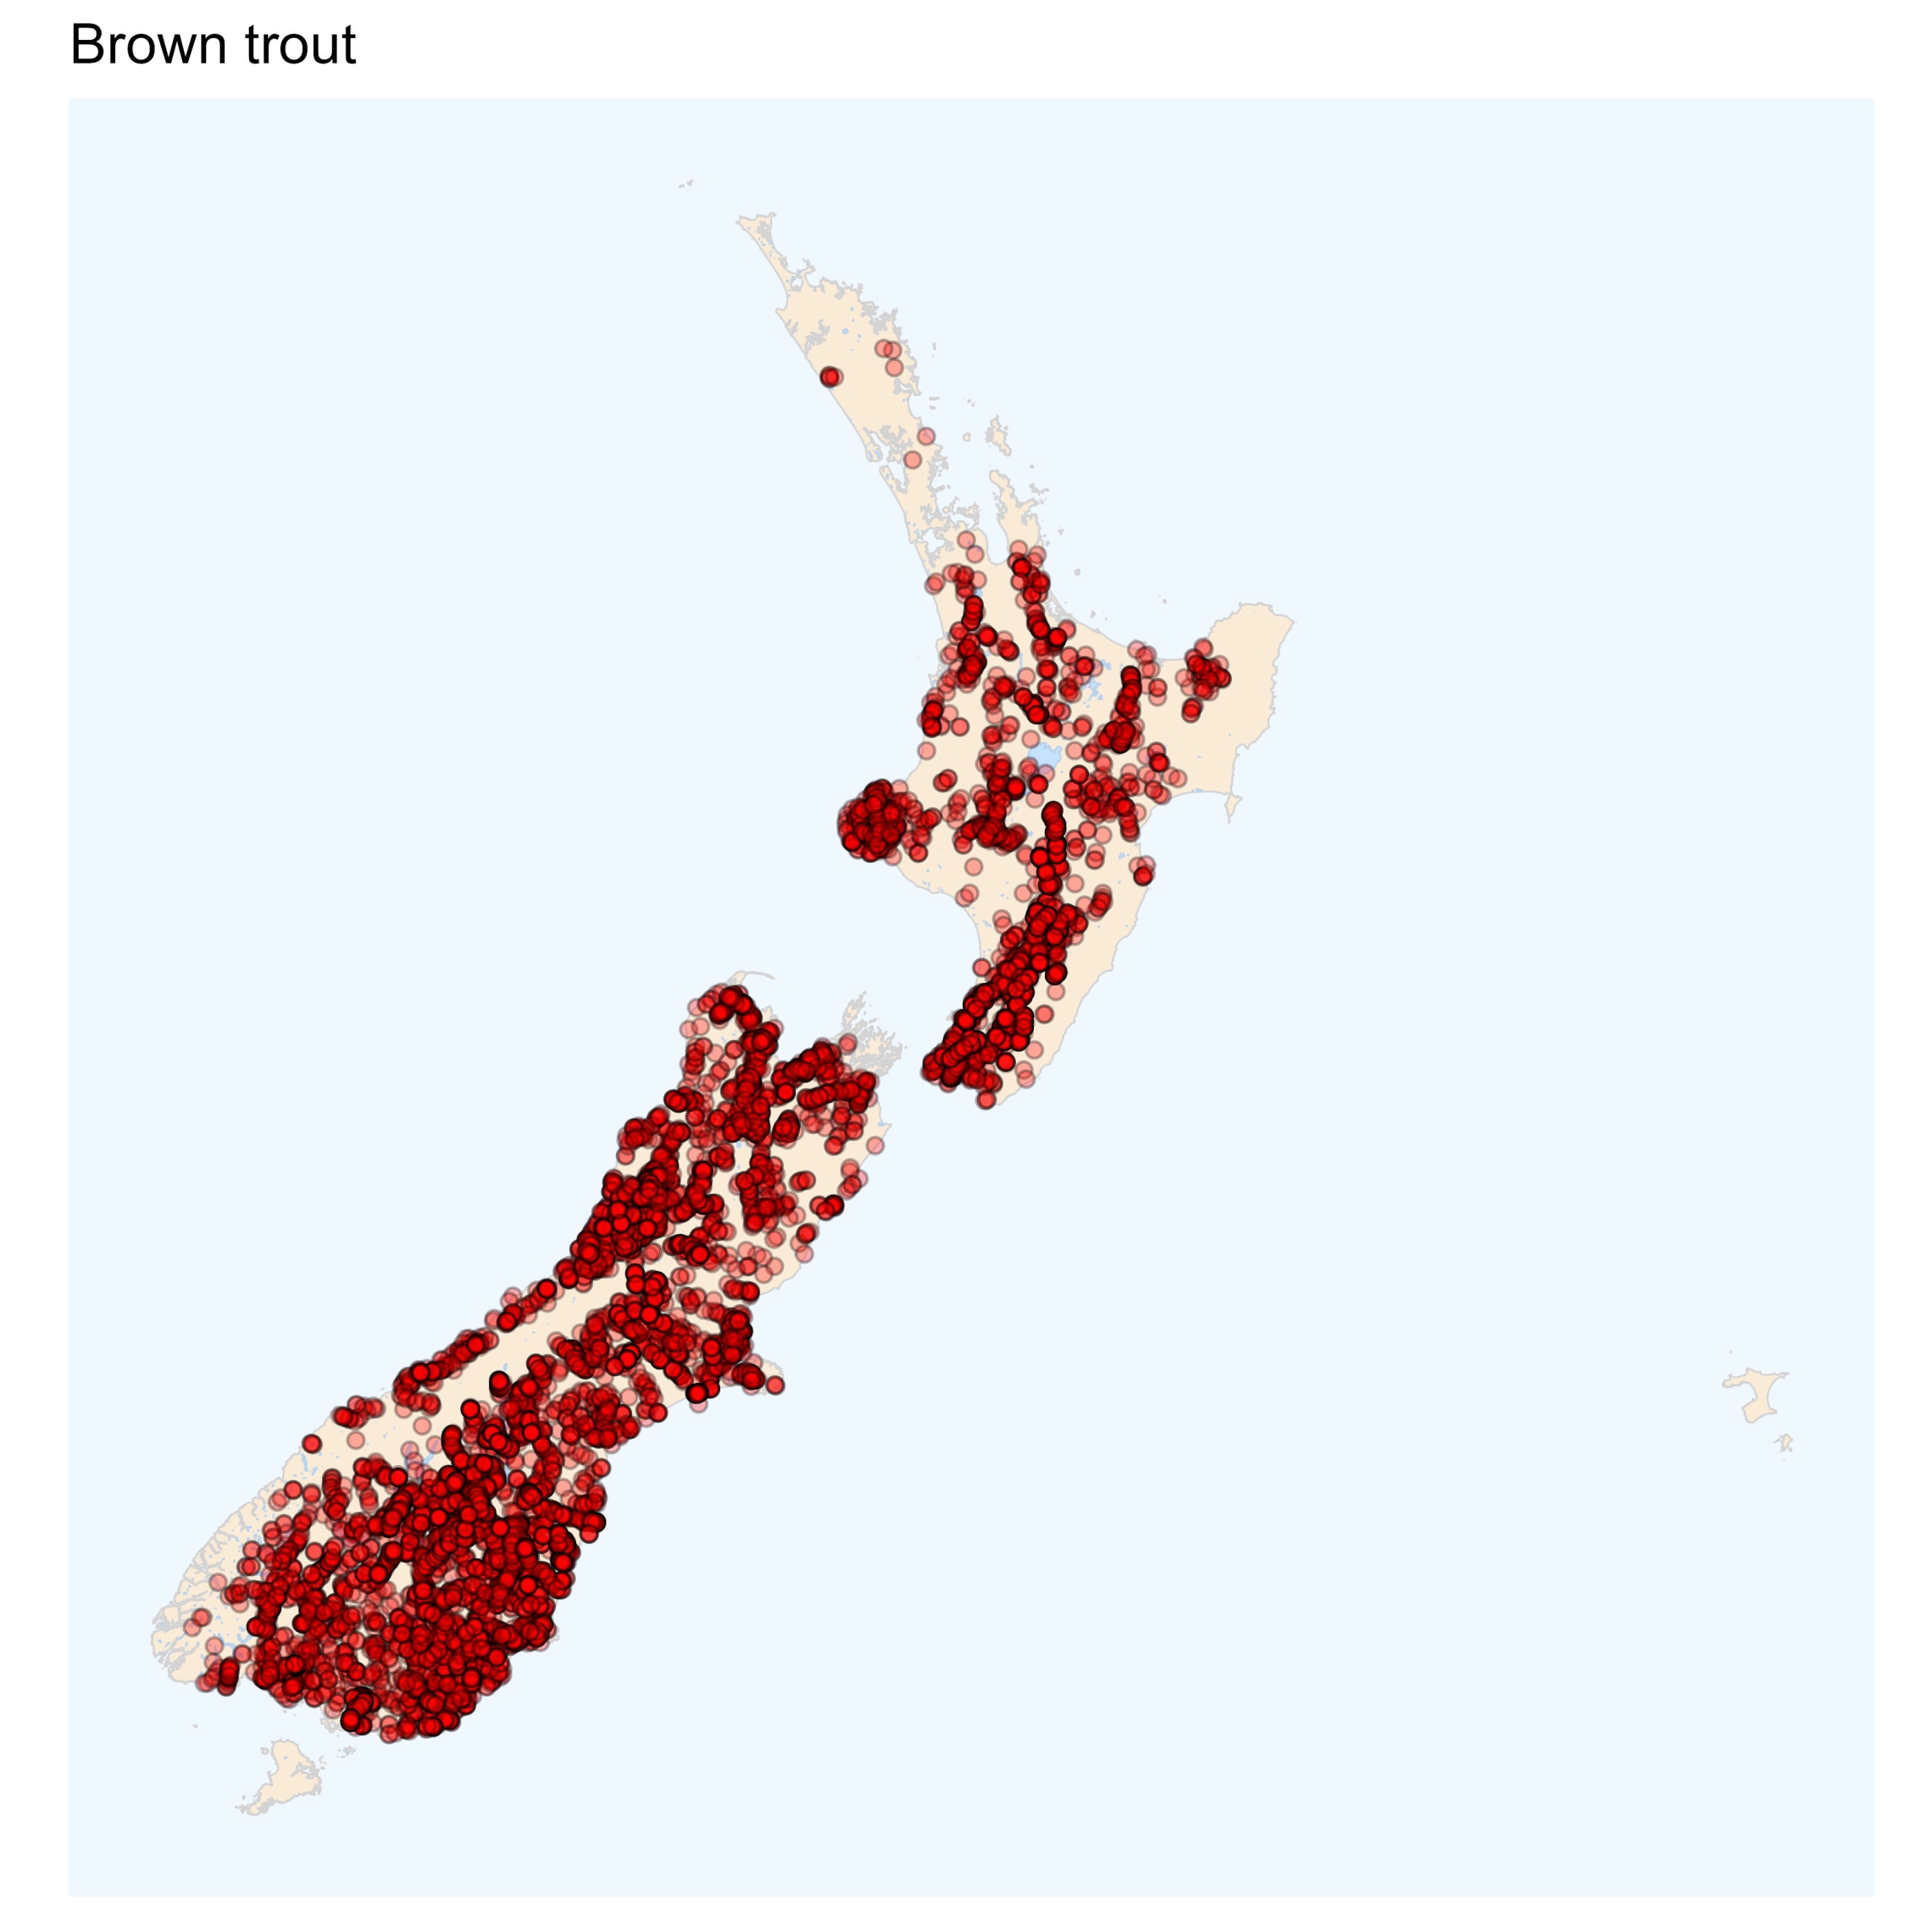 Brown trout - distribution map [NIWA]